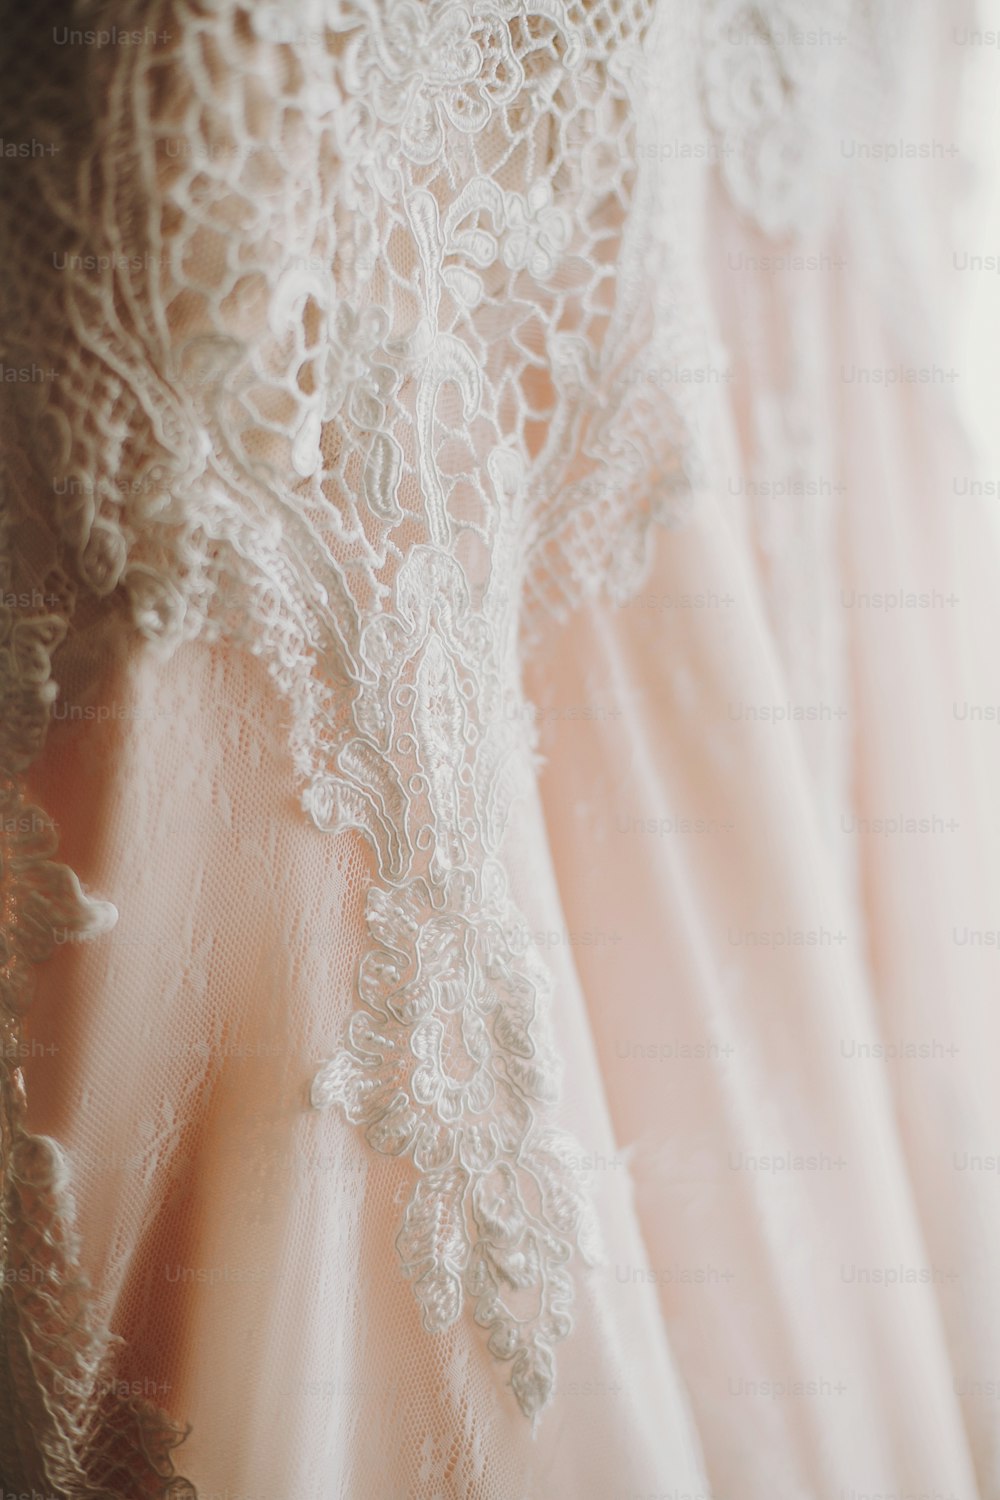 Robe de mariée moderne de luxe suspendue à la fenêtre. Incroyable robe de mariée élégante avec des détails floraux en dentelle, couleur rose pastel. Salon de mariage